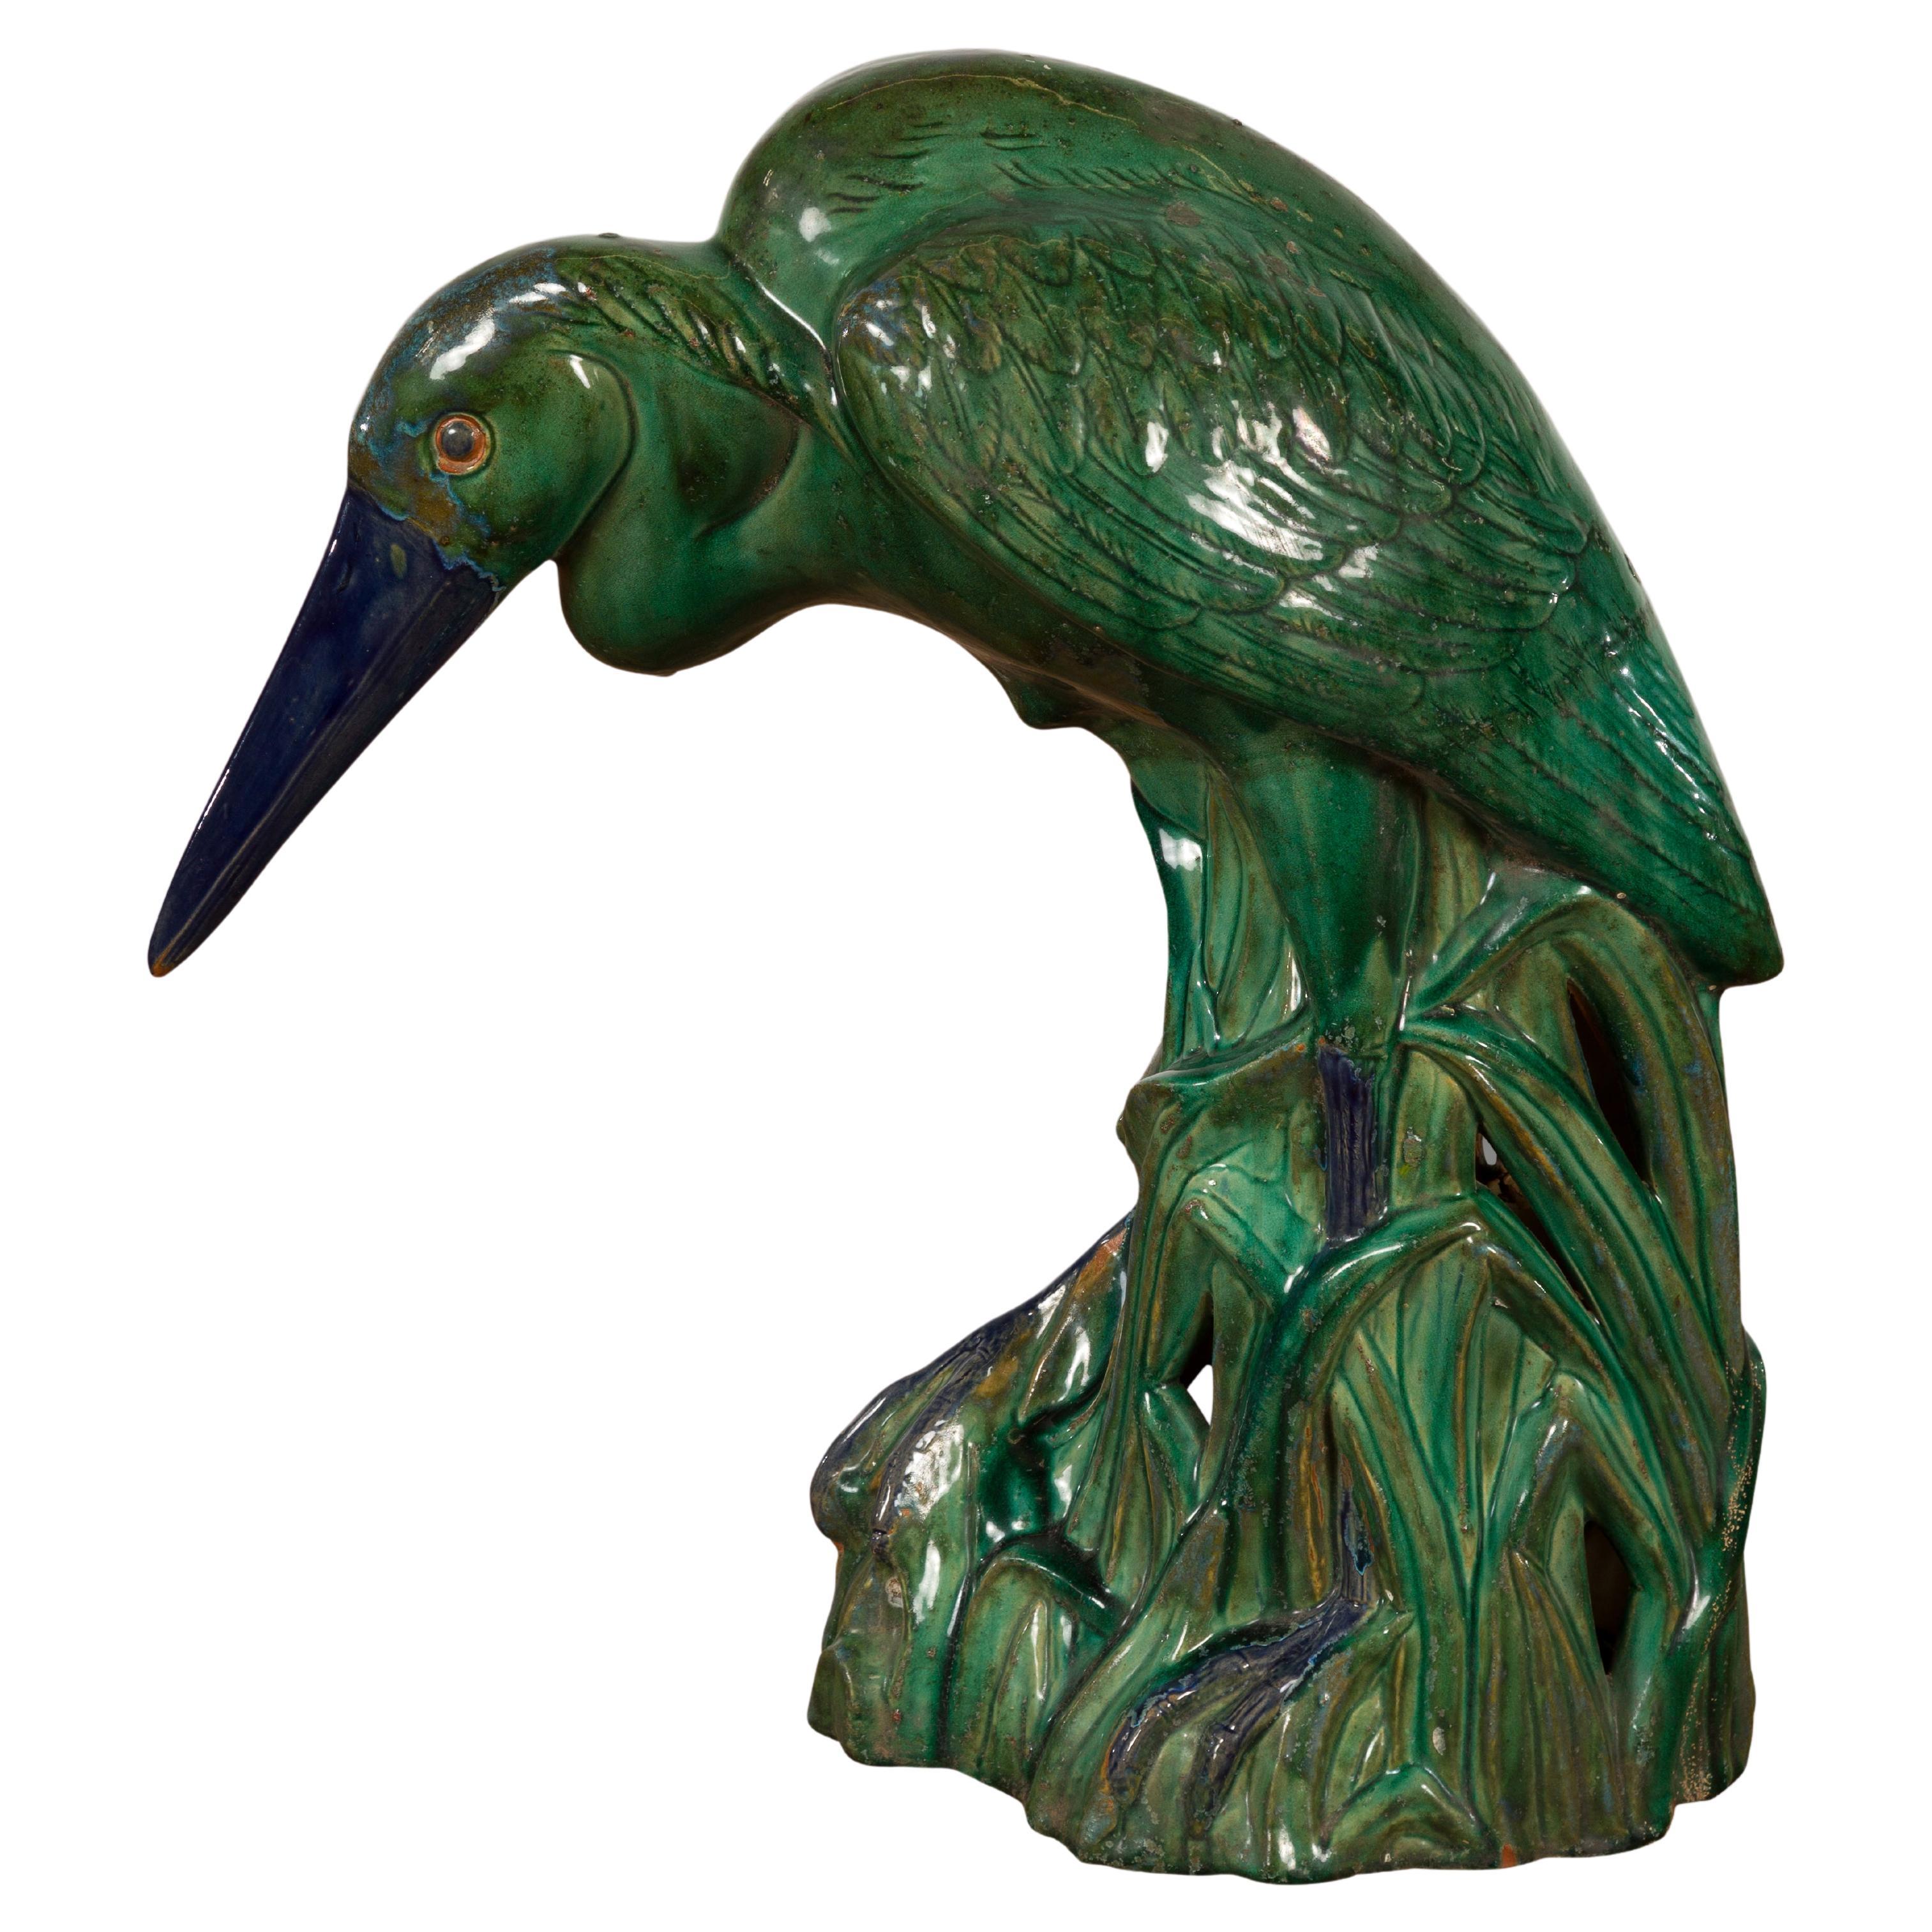 Grüne und blau glasierte Vintage-Keramik-Skulptur eines Vogels in Großformat